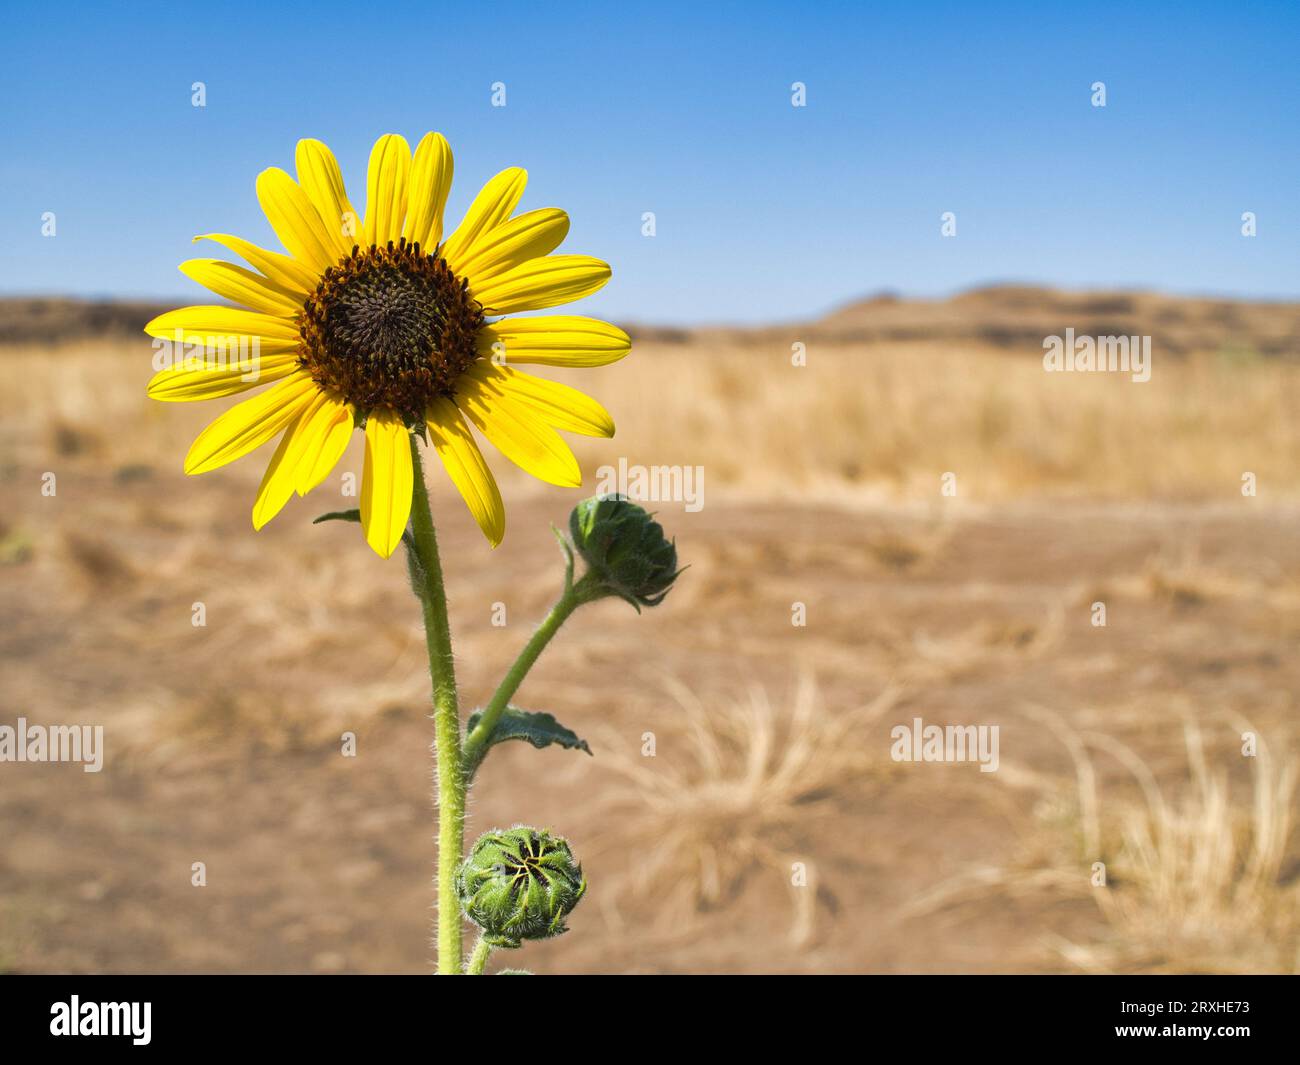 Yellow sunflower against blue sky in Washington desert landscape. Stock Photo